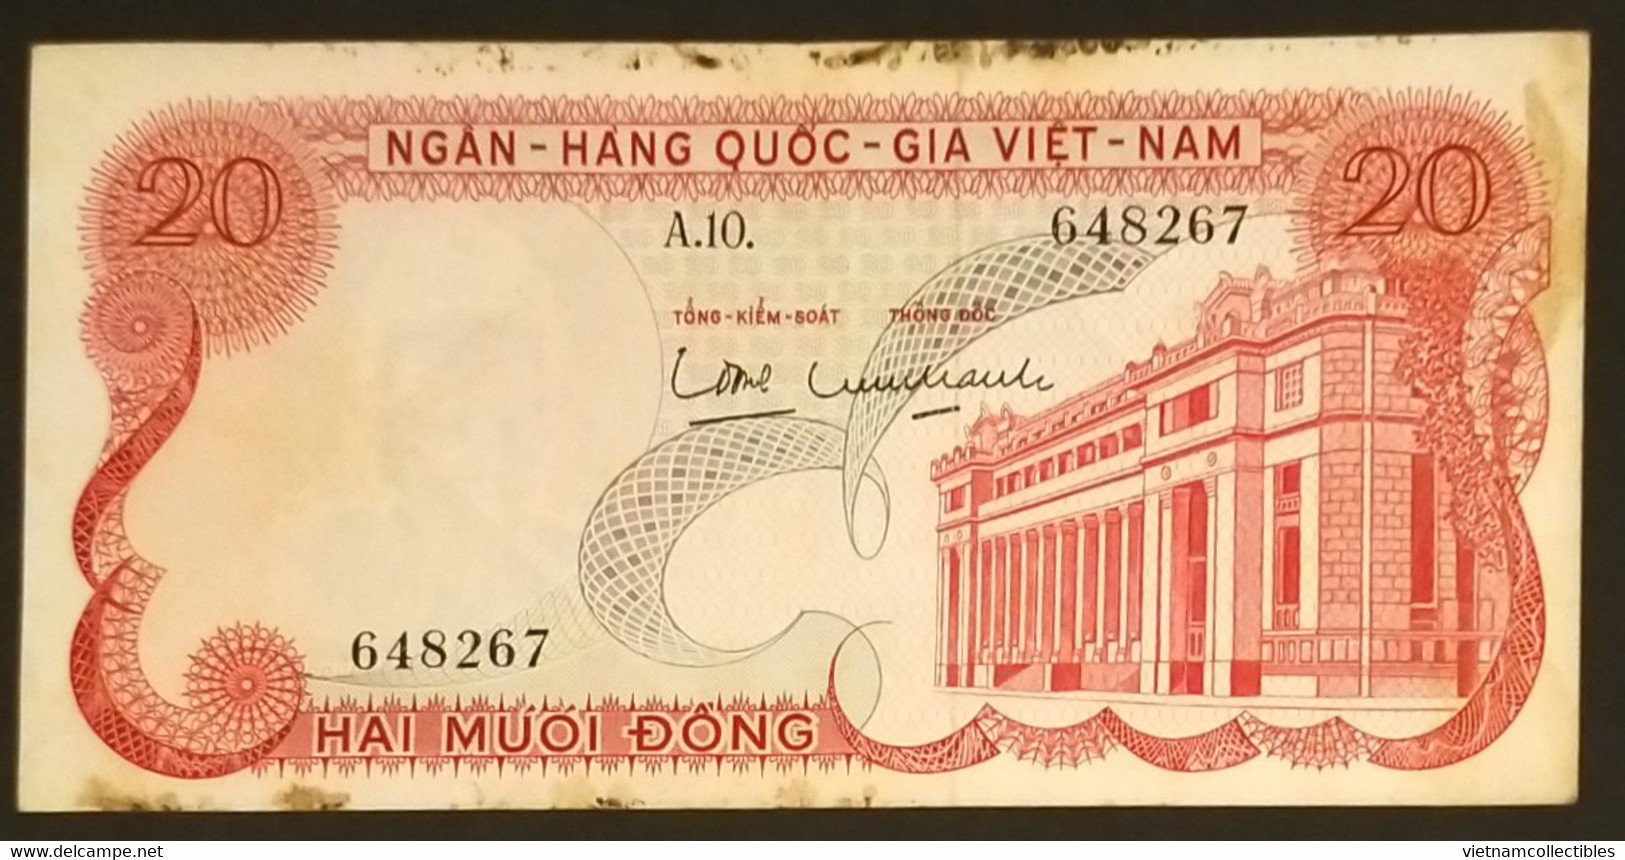 South Viet Nam Vietnam 20 Dông VF Banknote Note 1969 - Pick # 24 / 2 Photos - Vietnam